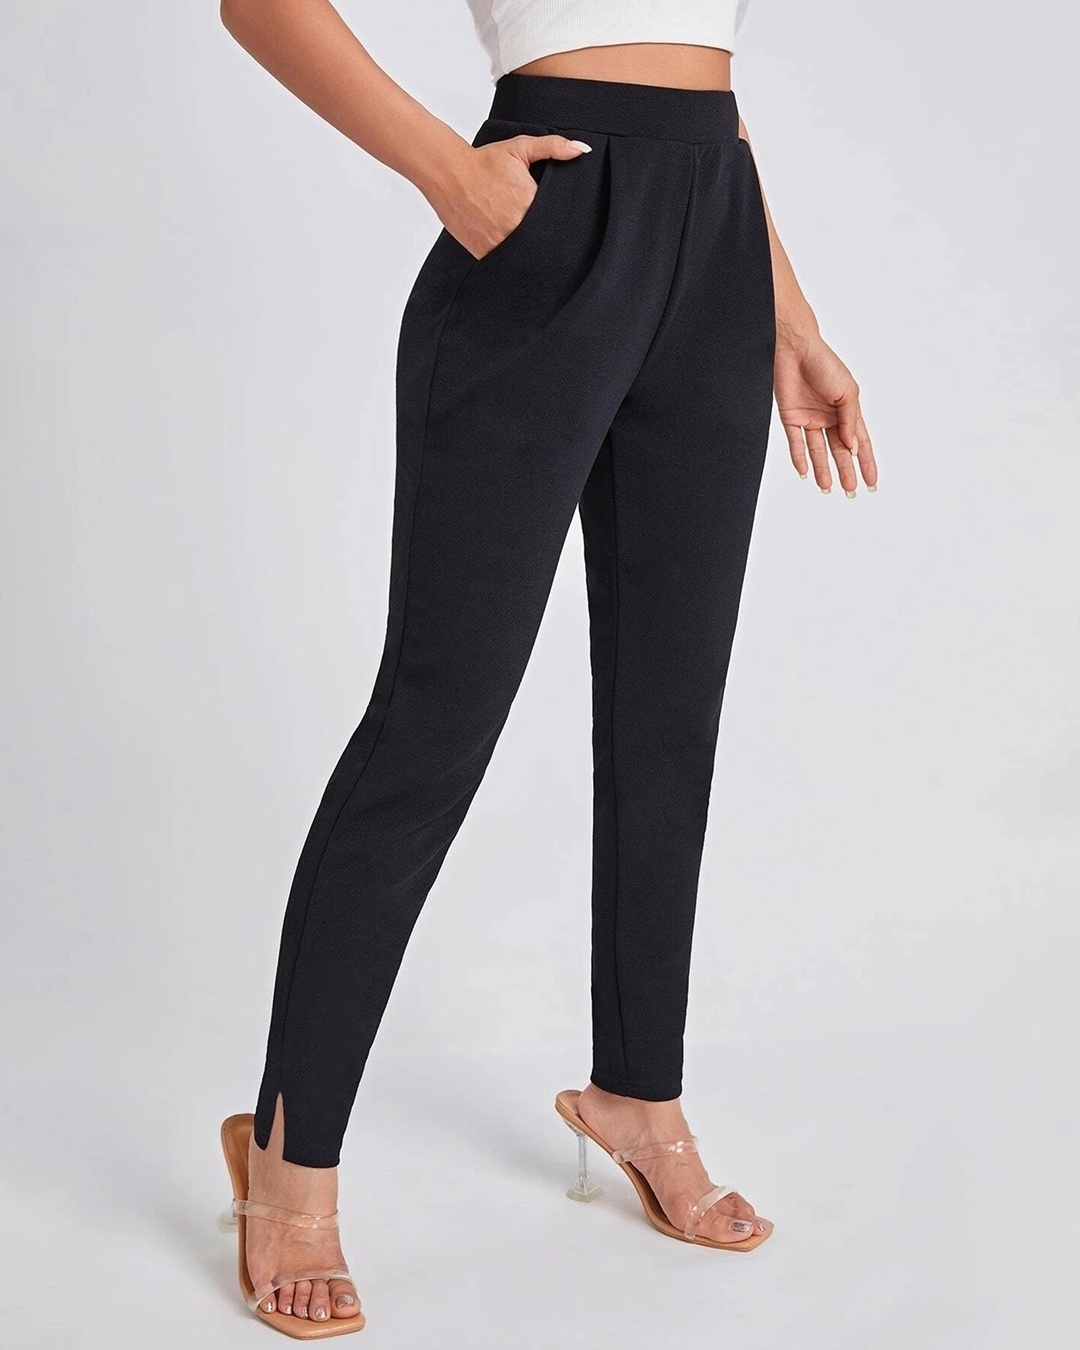 Buy Women Black Solid Formal Slim Fit Trousers Online  751407  Van Heusen